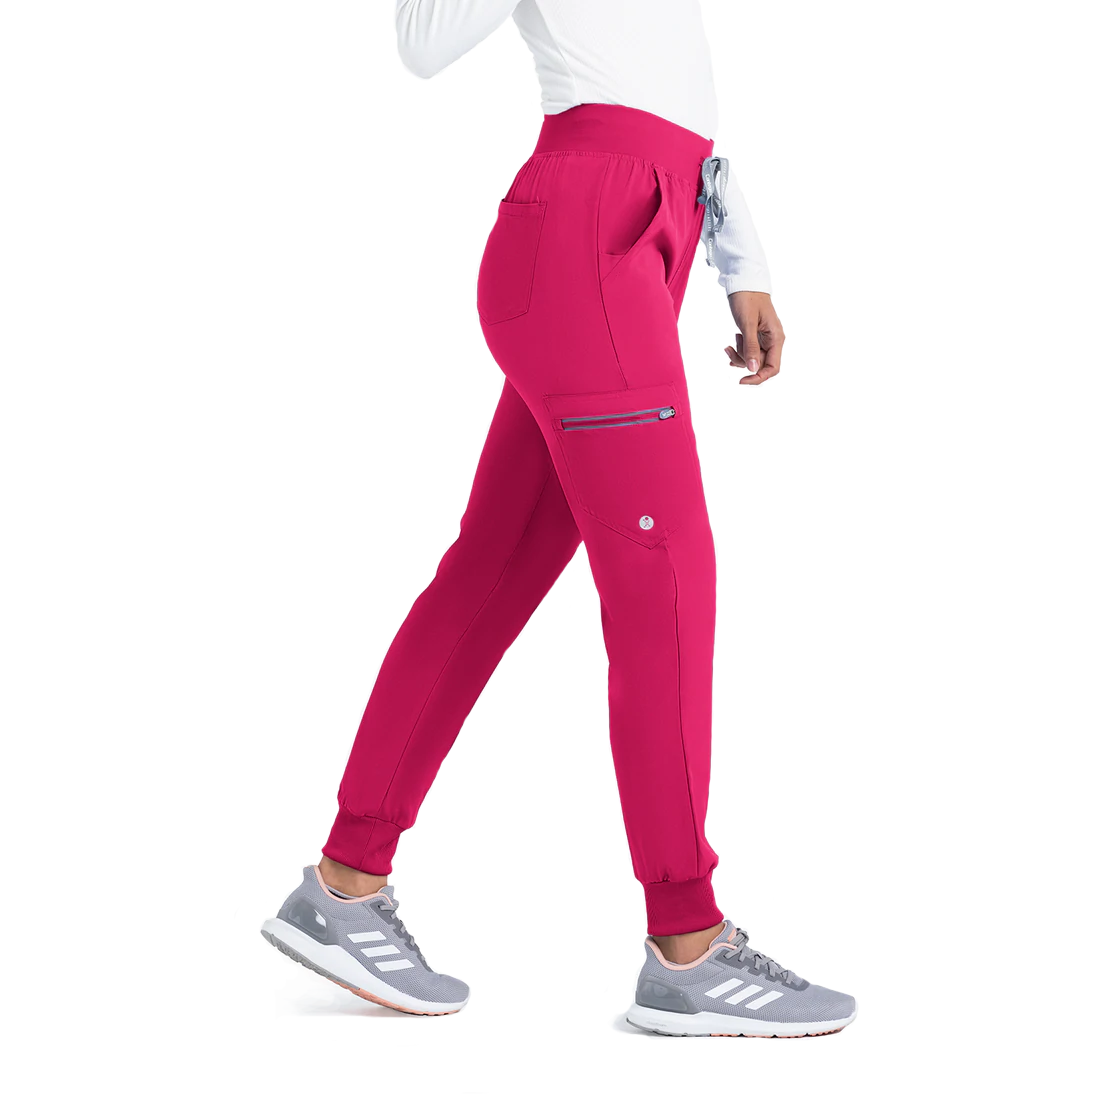 Women’s Active Jogger Pants - Petite